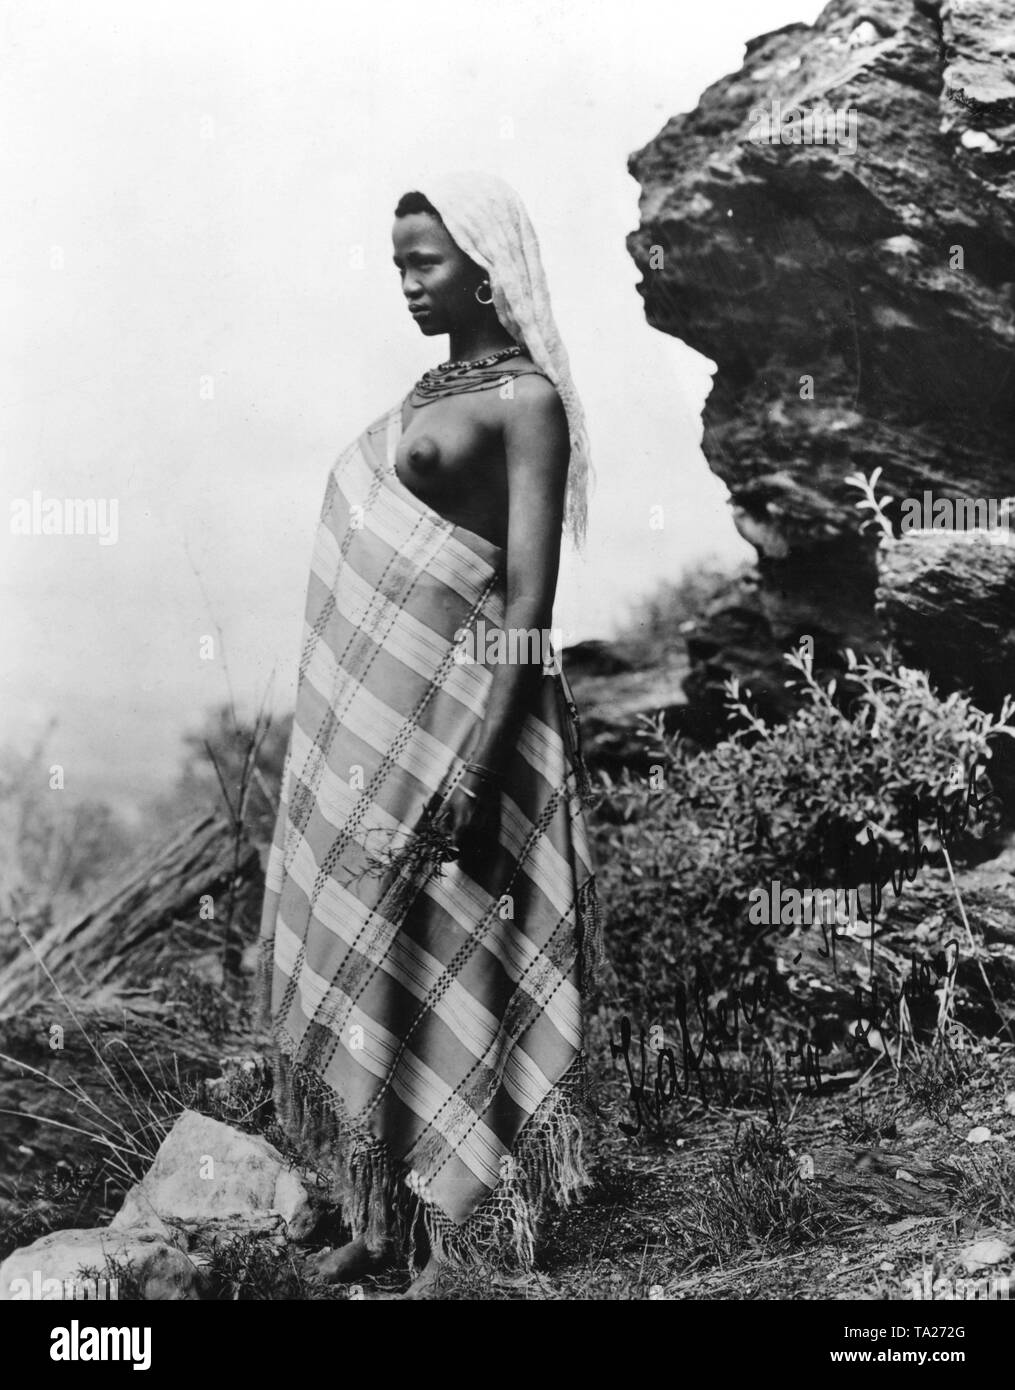 Kaffir donna vestita di un manto di fronte a una battuta in tedesco Africa del sud-ovest (senza data immagine). Foto Stock